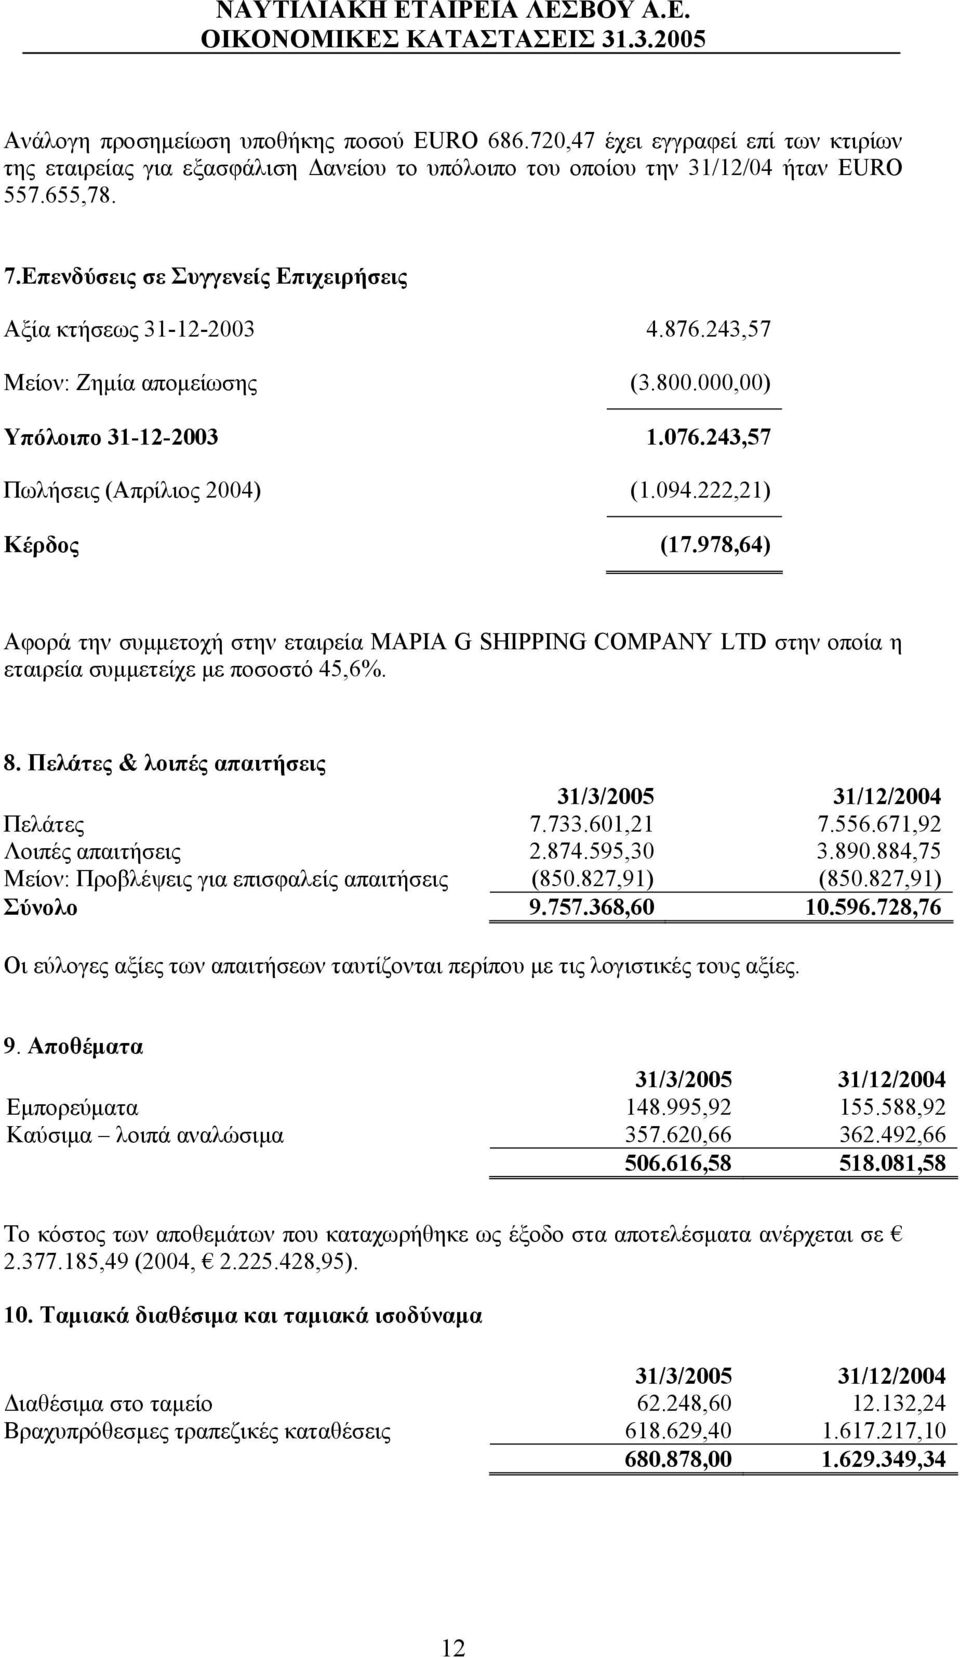 978,64) Αφορά την συμμετοχή στην εταιρεία ΜΑΡΙΑ G SHIPPING COMPANY LTD στην οποία η εταιρεία συμμετείχε με ποσοστό 45,6%. 8. Πελάτες & λοιπές απαιτήσεις 31/3/2005 31/12/2004 Πελάτες 7.733.601,21 7.